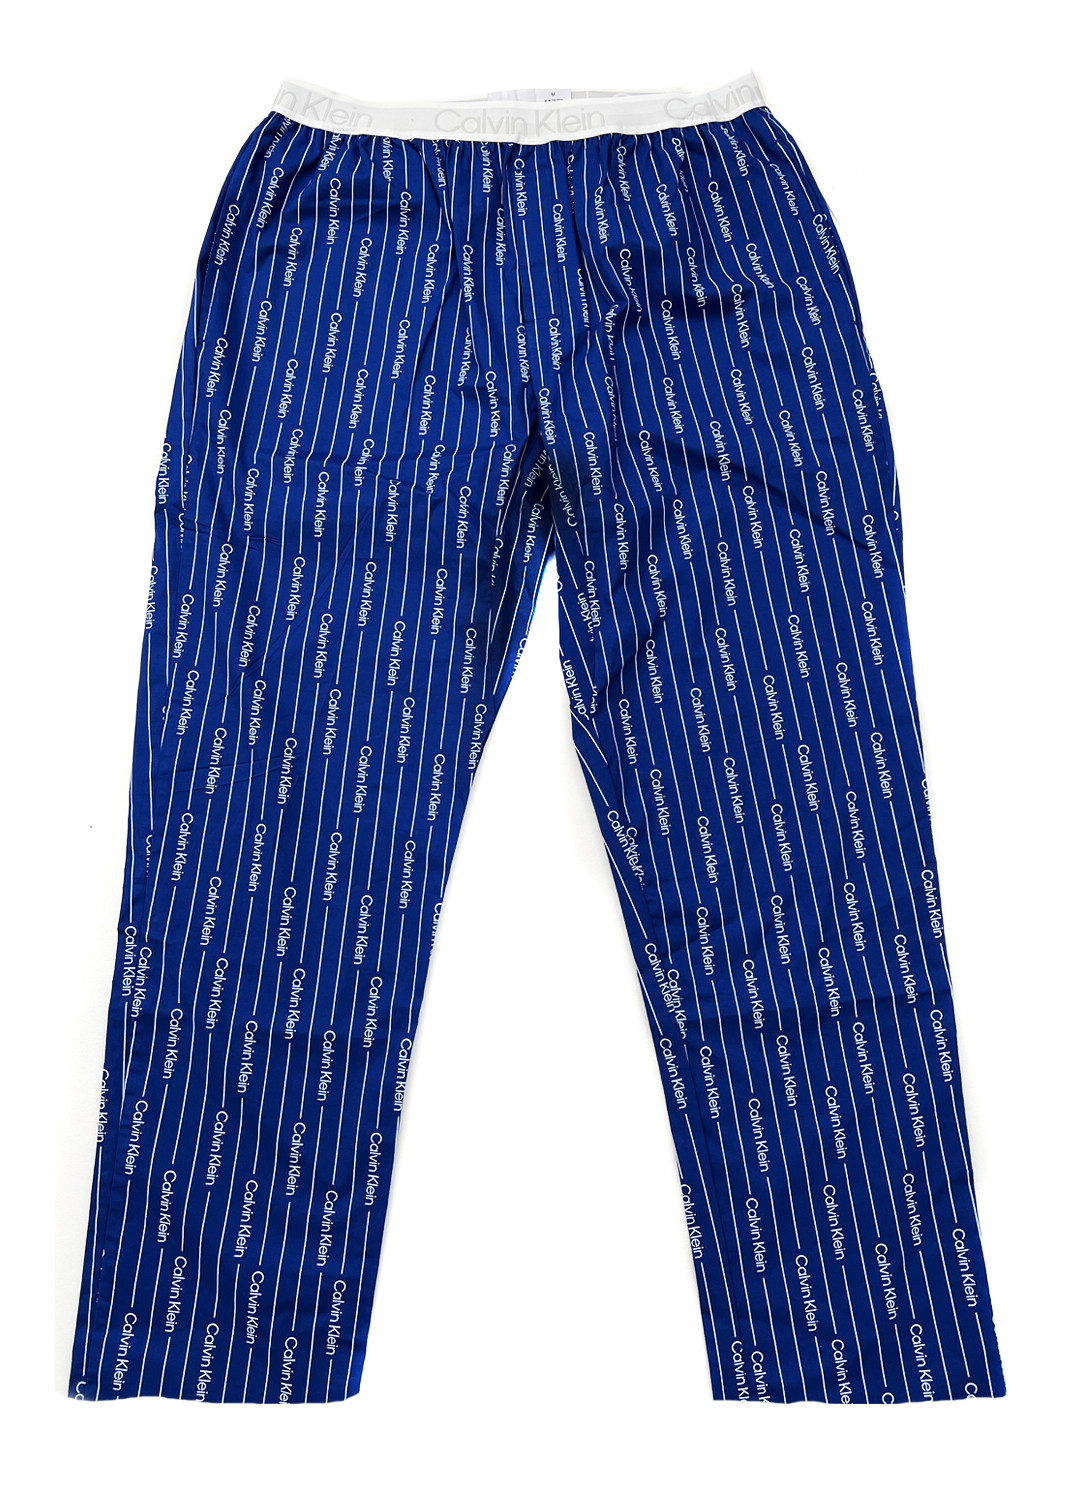 Pánské pyžamové kalhoty - NM2180E 1MR - modrá/bílá - Calvin Klein modrá/bílá L